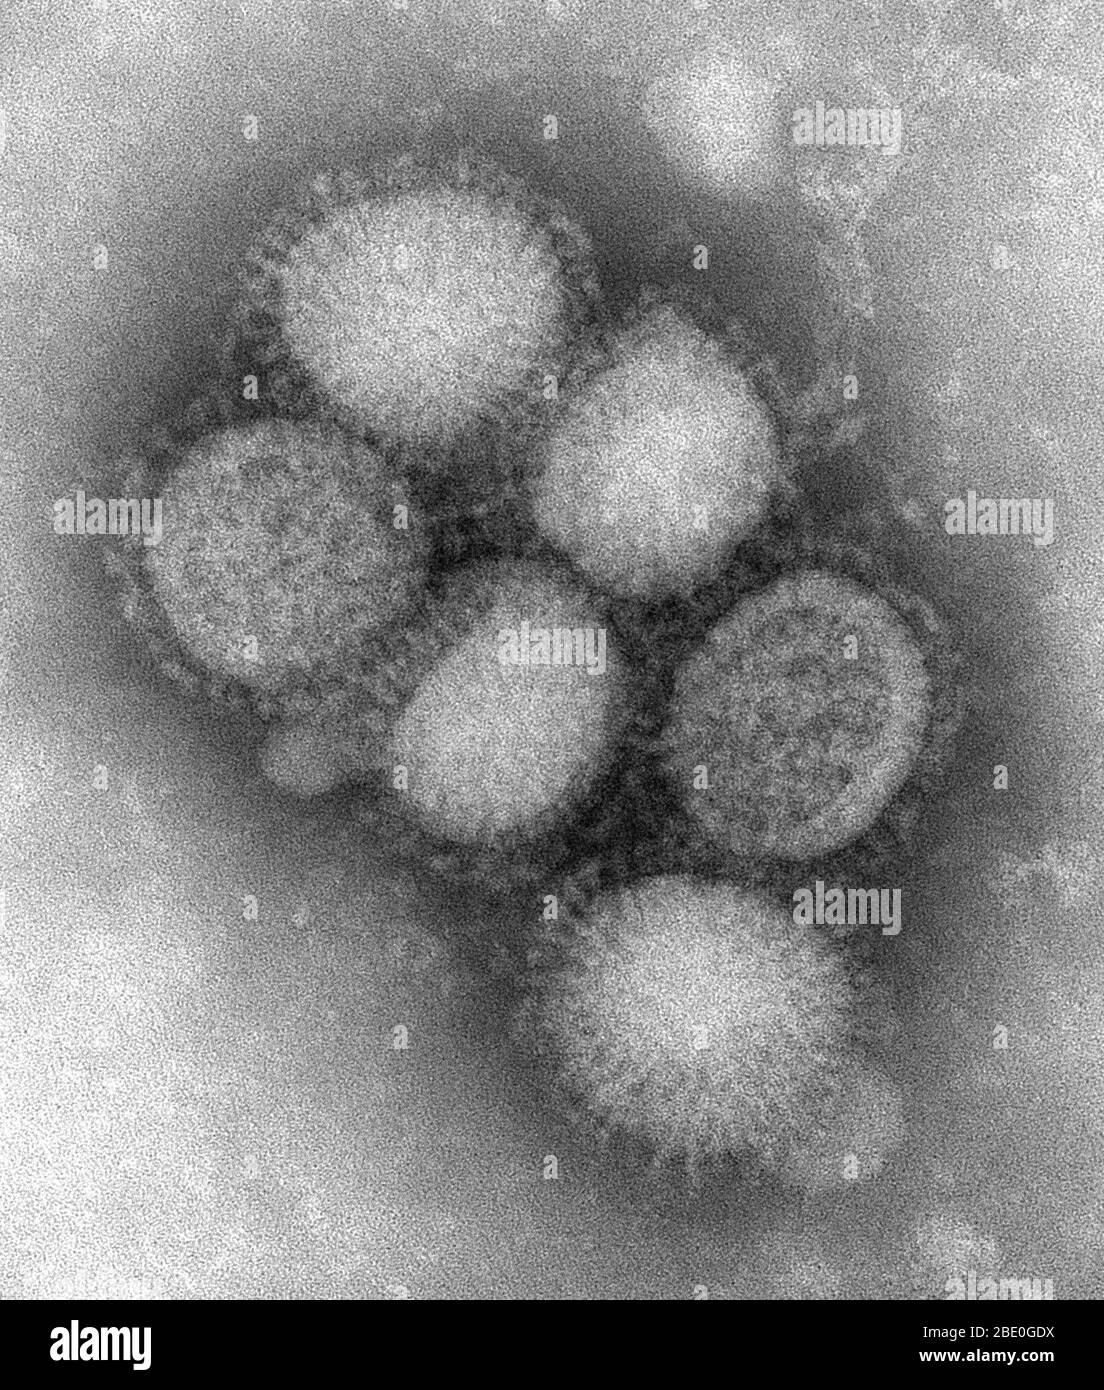 Negativ gefärbte Transmissionselektronenmikrographie (TEM) einiger ultrastruktureller Morphologie des A/CA/4/09 Schweinegrippe-Virus. Schweinegrippe (Schweinegrippe) ist eine Atemwegserkrankung von Schweinen, die durch das Typ-A-Grippevirus verursacht wird und regelmäßig zu einem Grippeausbruch bei Schweinen führt. Schweinegrippe-Viren verursachen hohe Krankheitswerte und niedrige Todesraten bei Schweinen. Schweinegrippeviren können das ganze Jahr über unter den Schweinen zirkulieren, aber die meisten Ausbrüche treten in den späten Herbst- und Wintermonaten auf, ähnlich wie Ausbrüche beim Menschen. Das klassische Schweinegrippe-Virus (ein Influenza-Typ-A-H1N1-Virus) war das erste Isol Stockfoto